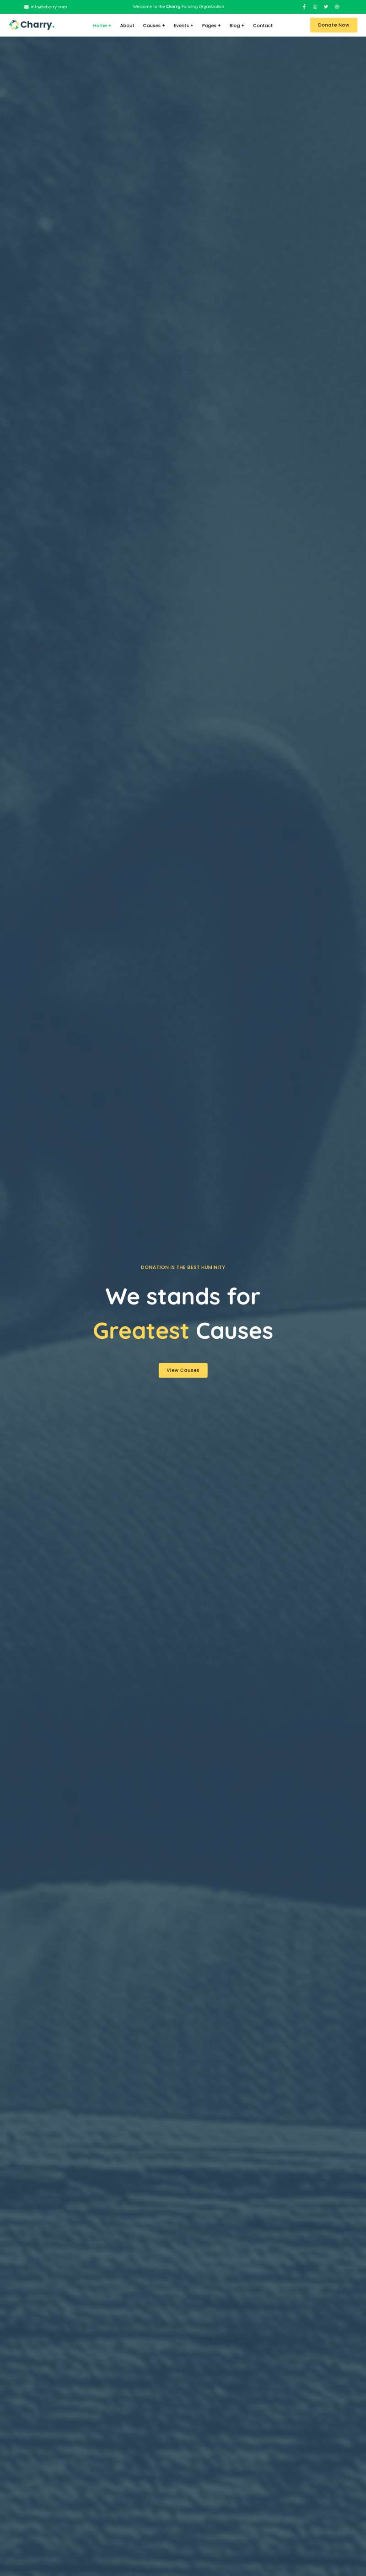 公益慈善筹款平台网站HTML模板